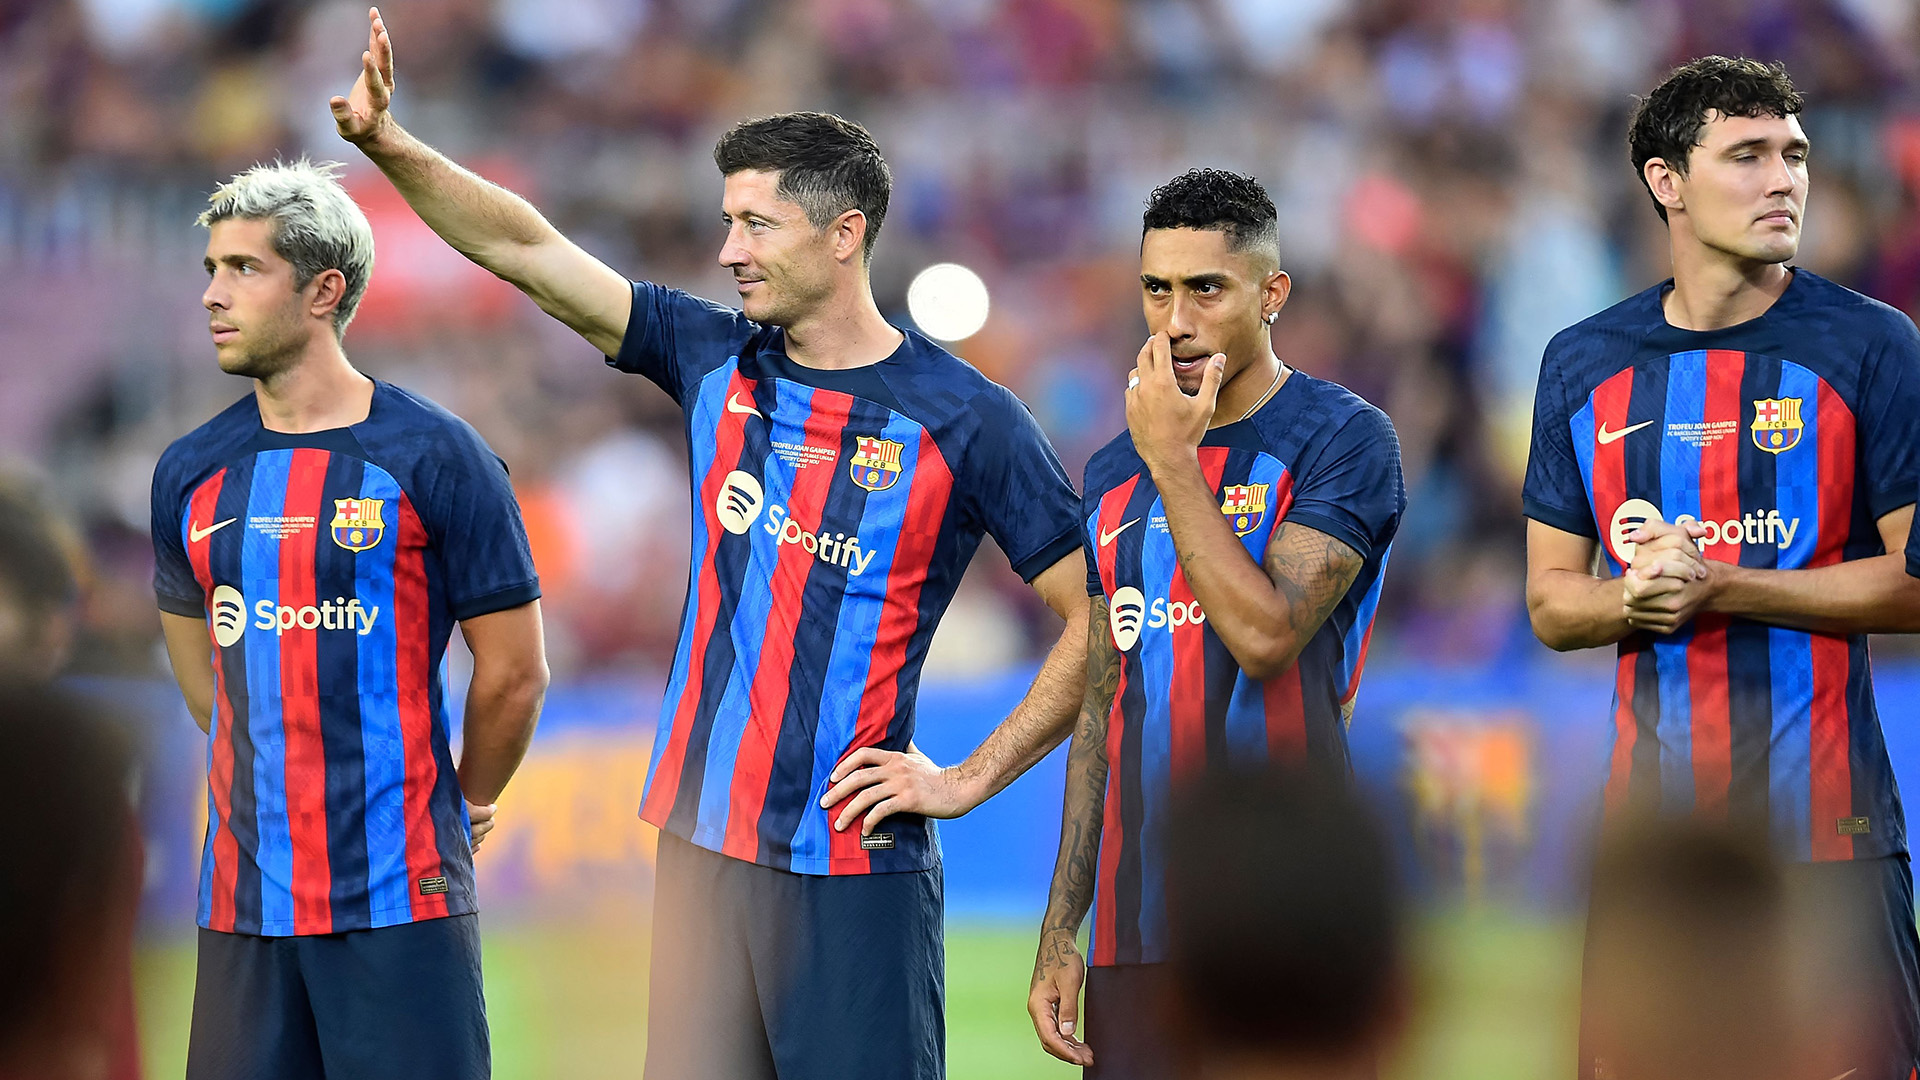 برشلونة يكشف رسميا عن قميصه الثالث (فيديو)